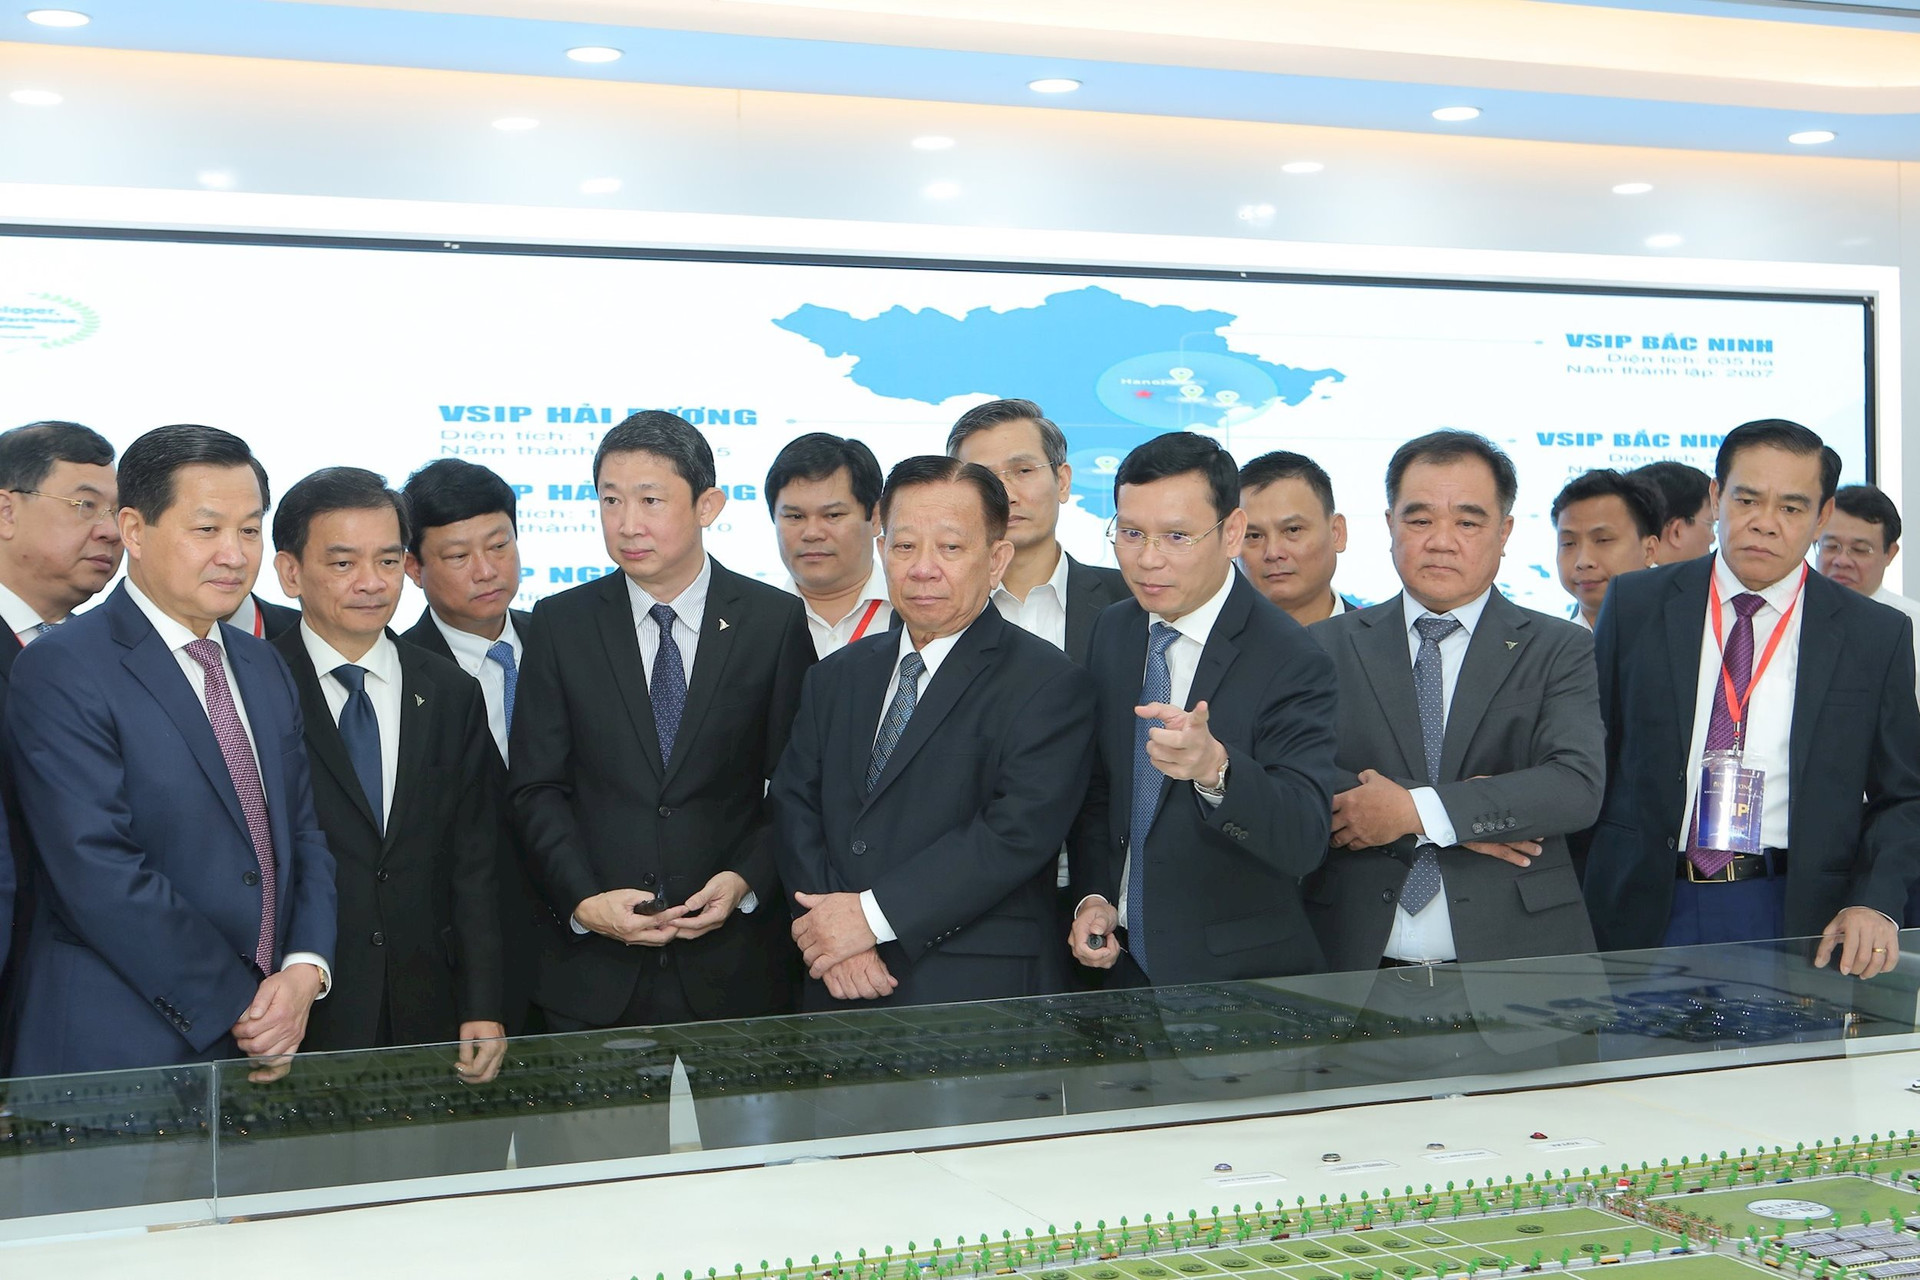 VSIP kí hợp tác phát triển khu công nghiệp với 9 tỉnh thành Việt Nam - Ảnh 1.